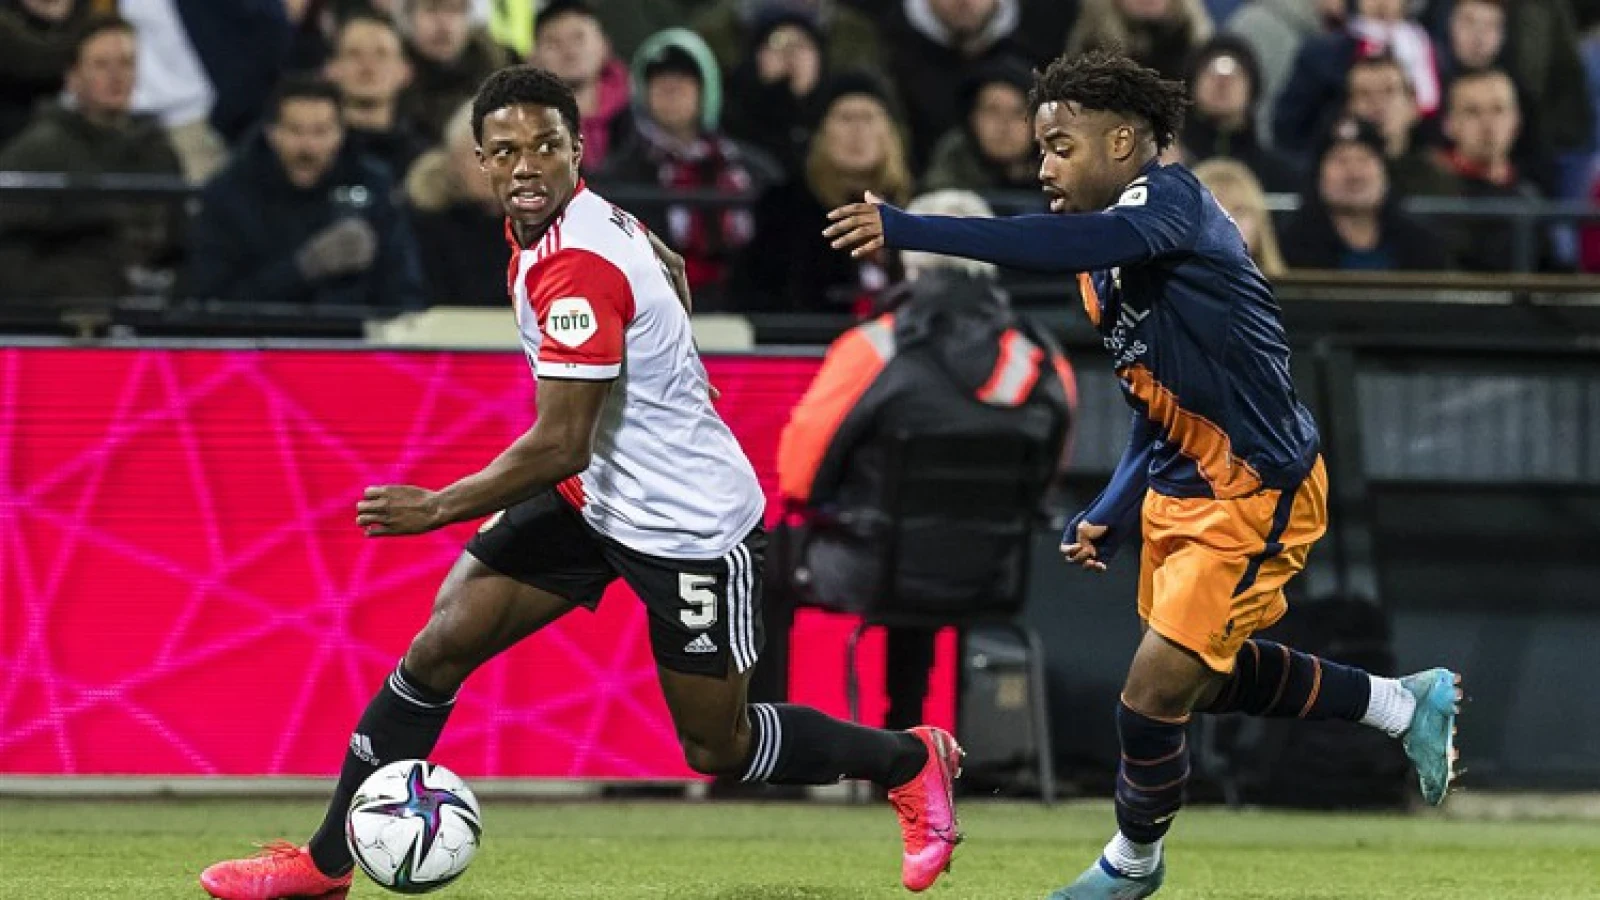 'Malacia gaat voor Feyenoord begrippen bij Manchester United spelen met speciaal rugnummer'